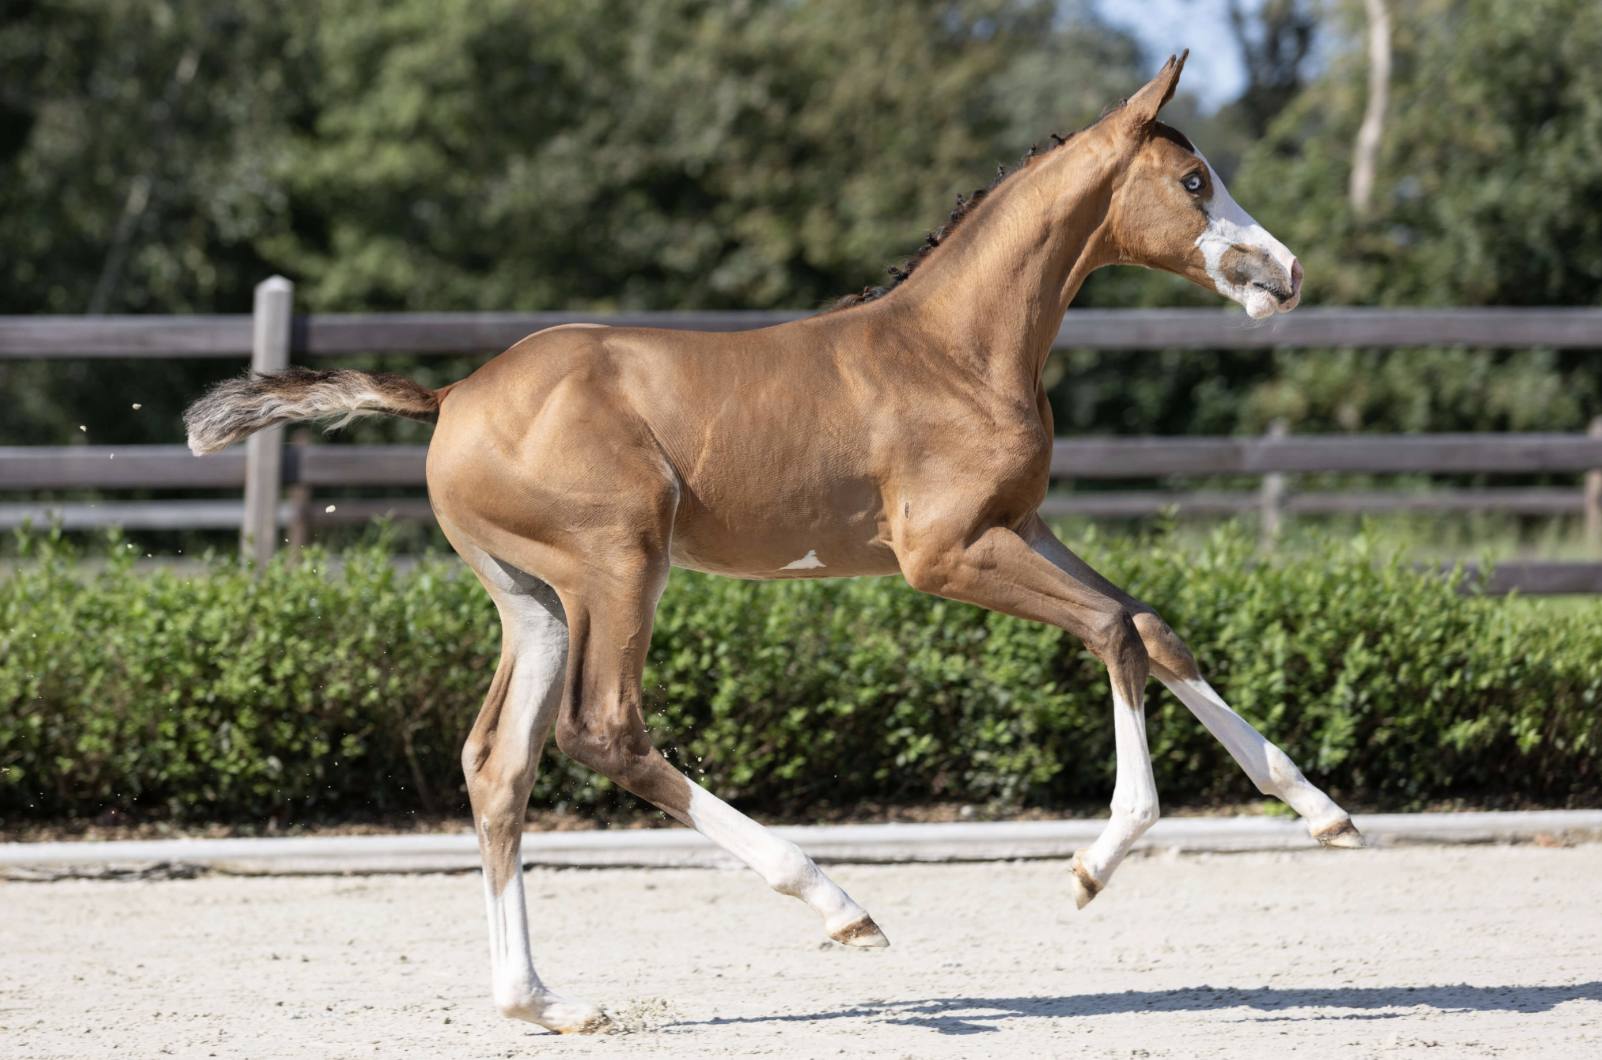 Belgisch kampioen, Ermitage Kalone drukt stempel in exclusieve veulen collectie Equestrian-Auctions.com